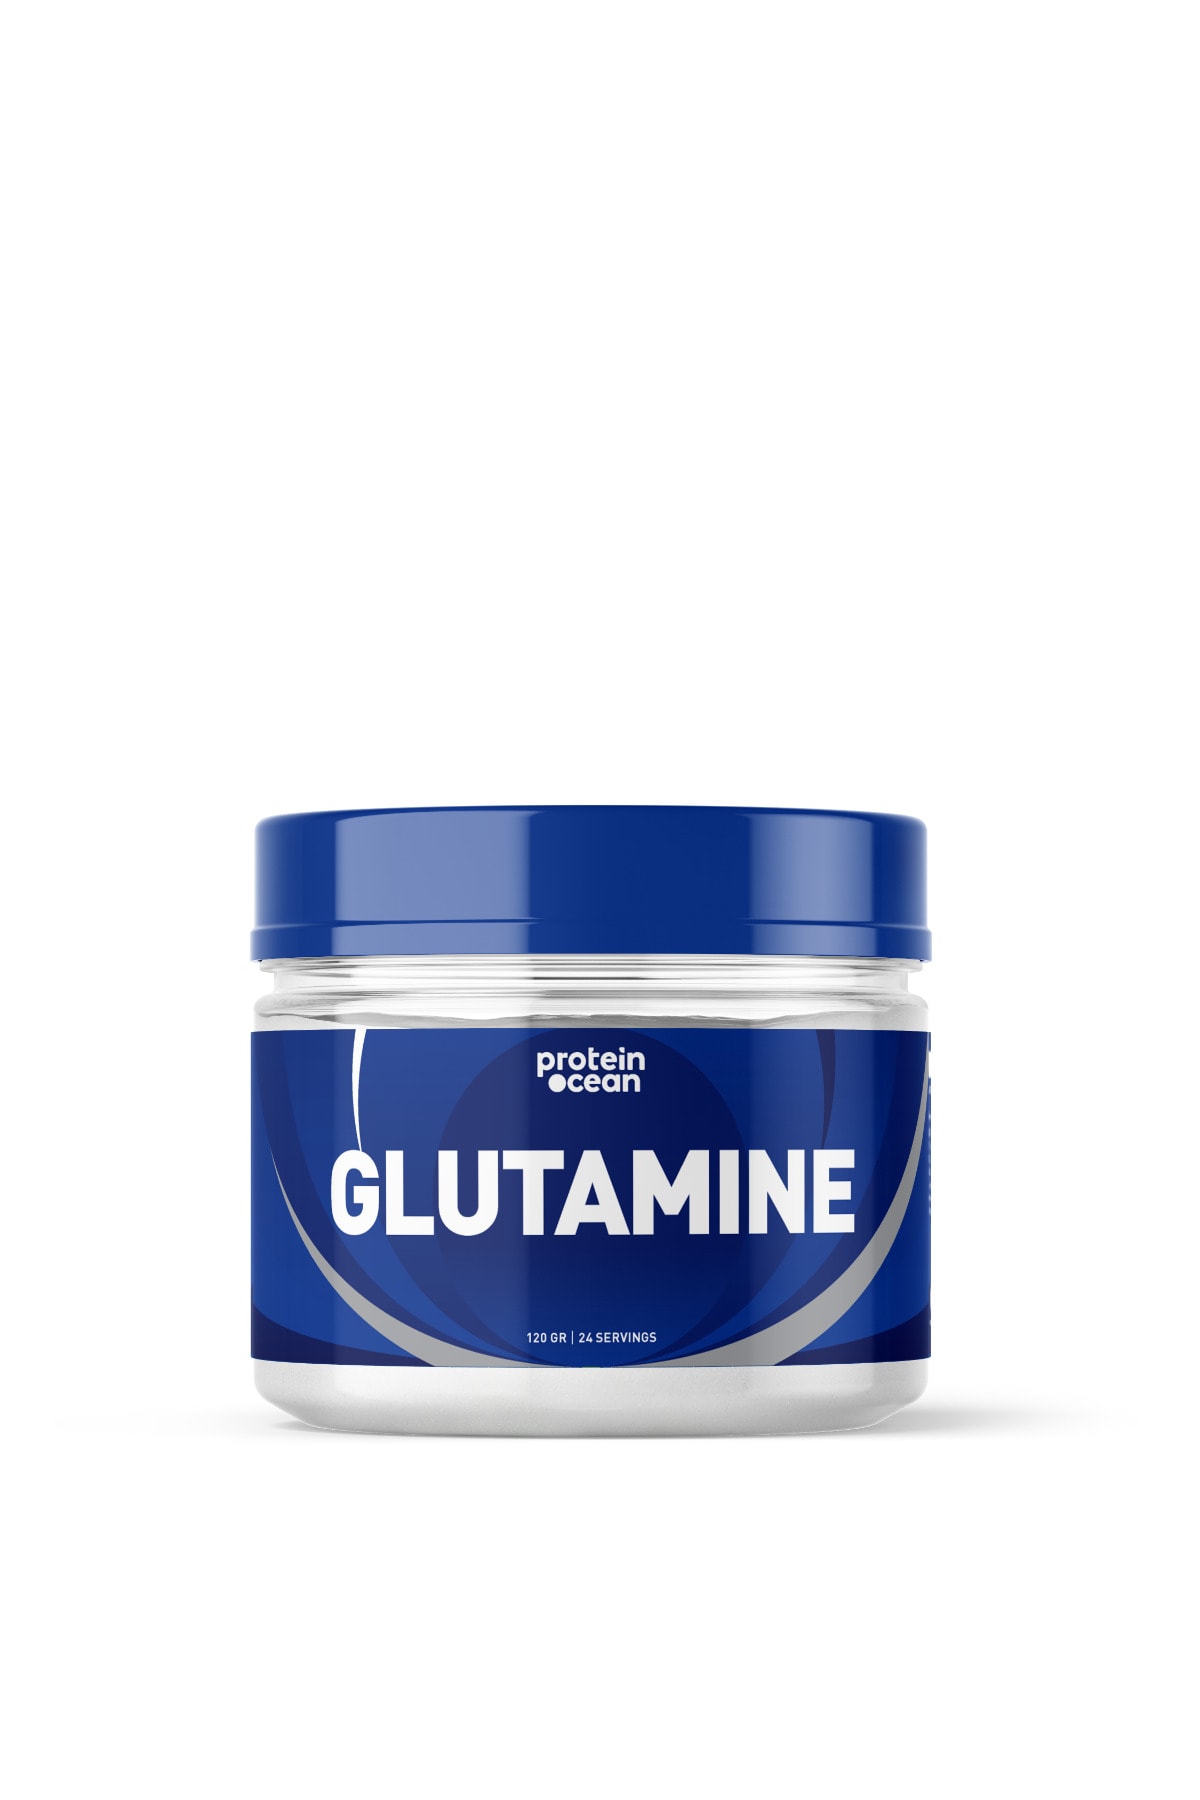 Proteinocean Glutamine - 120g - 24 Servis